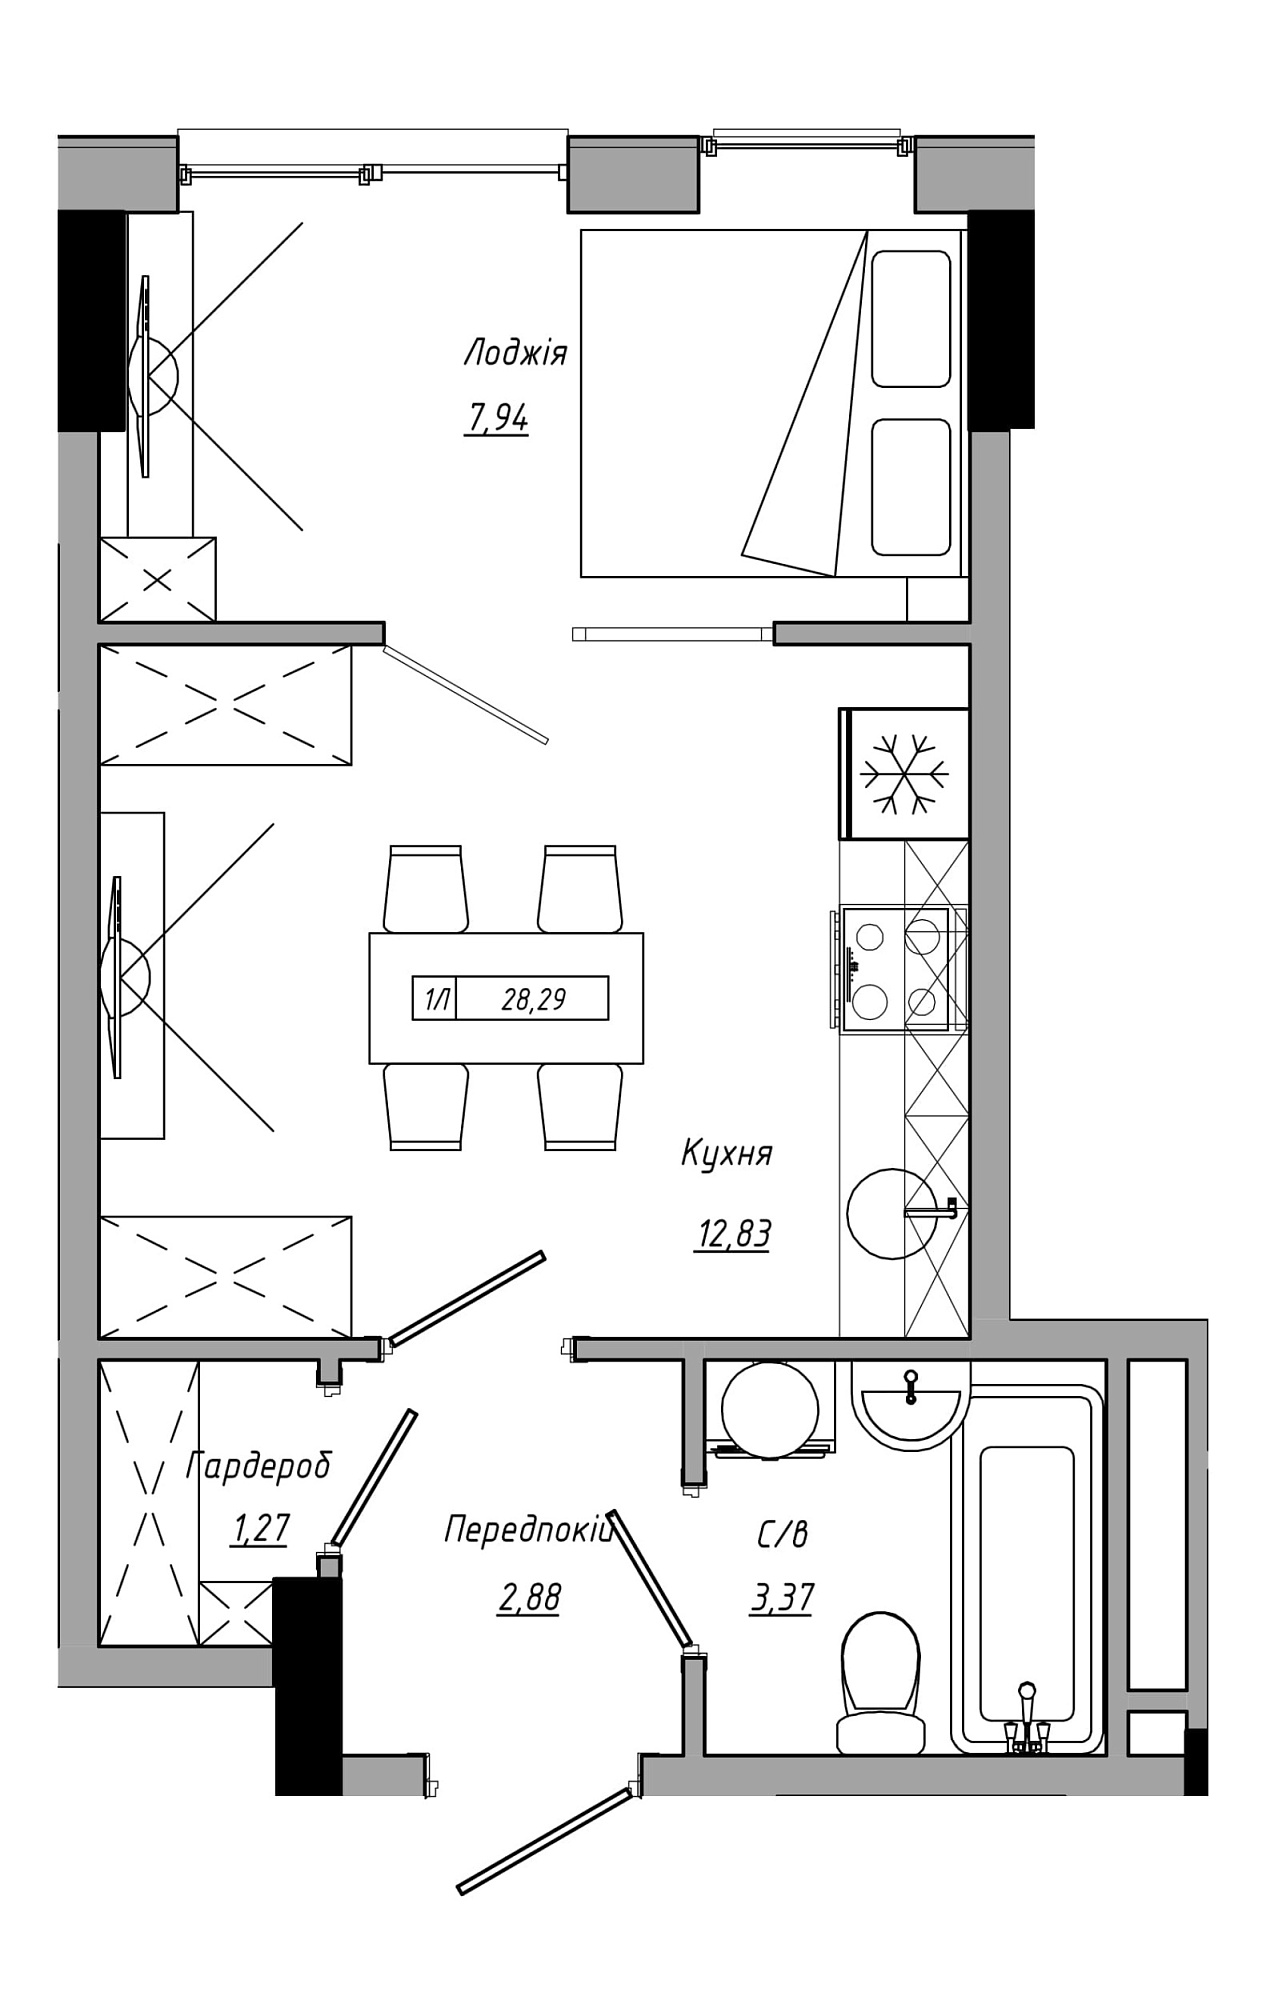 Планування 1-к квартира площею 28.29м2, AB-21-08/00014.